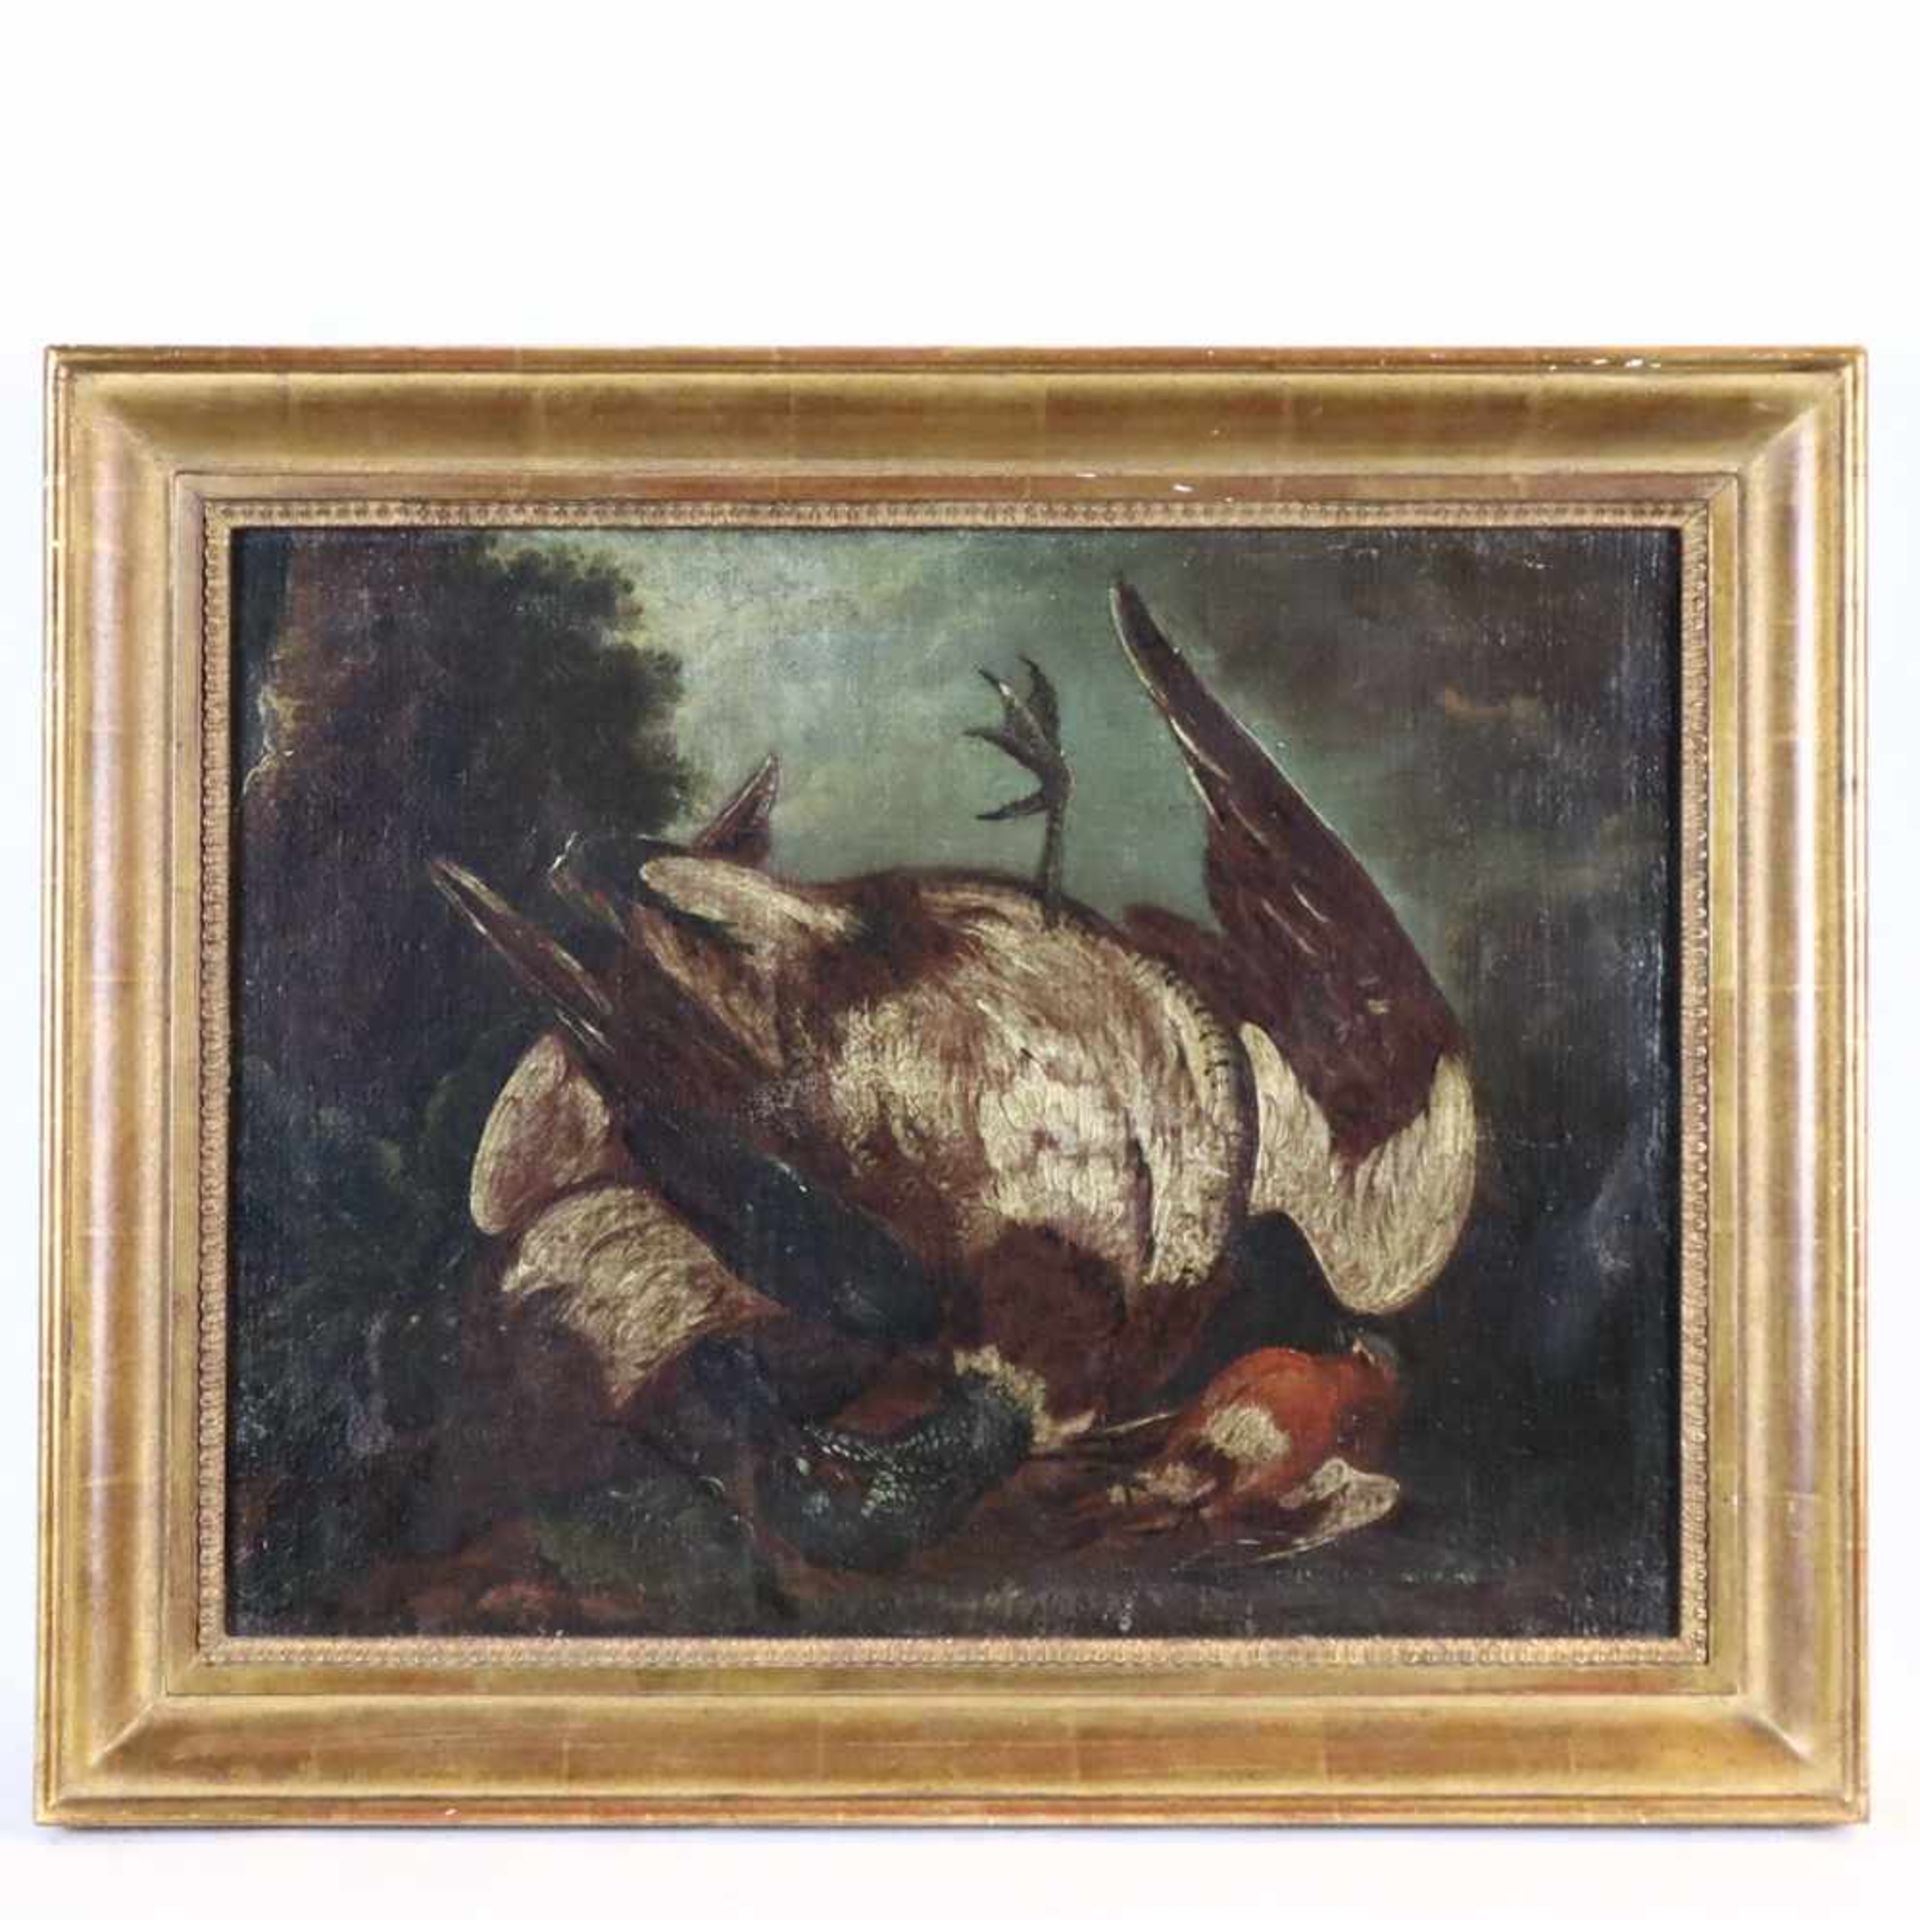 Barockmaler - Stillleben mit erlegter Ente und Singvogel (Buchfink), wohl spätes 18.Jh., Öl auf